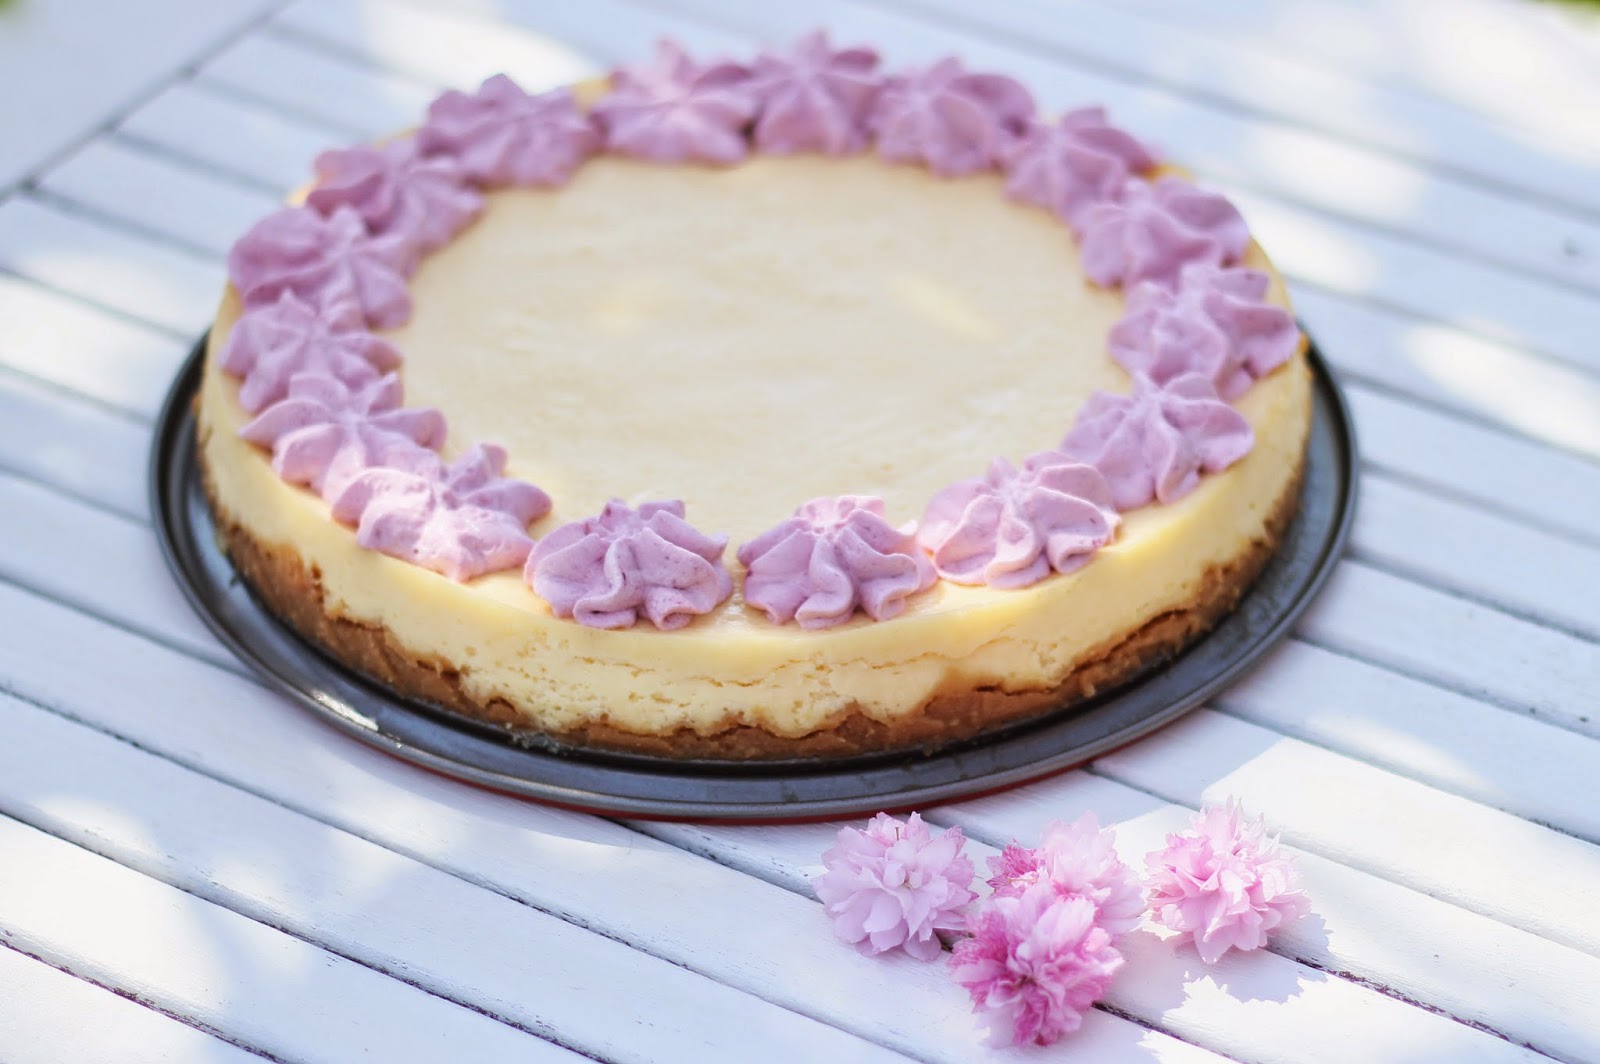 Recette de cheesecake au citron et sa chantilly aux fruits des bois. De quoi apporter l'été dans nos assiettes !